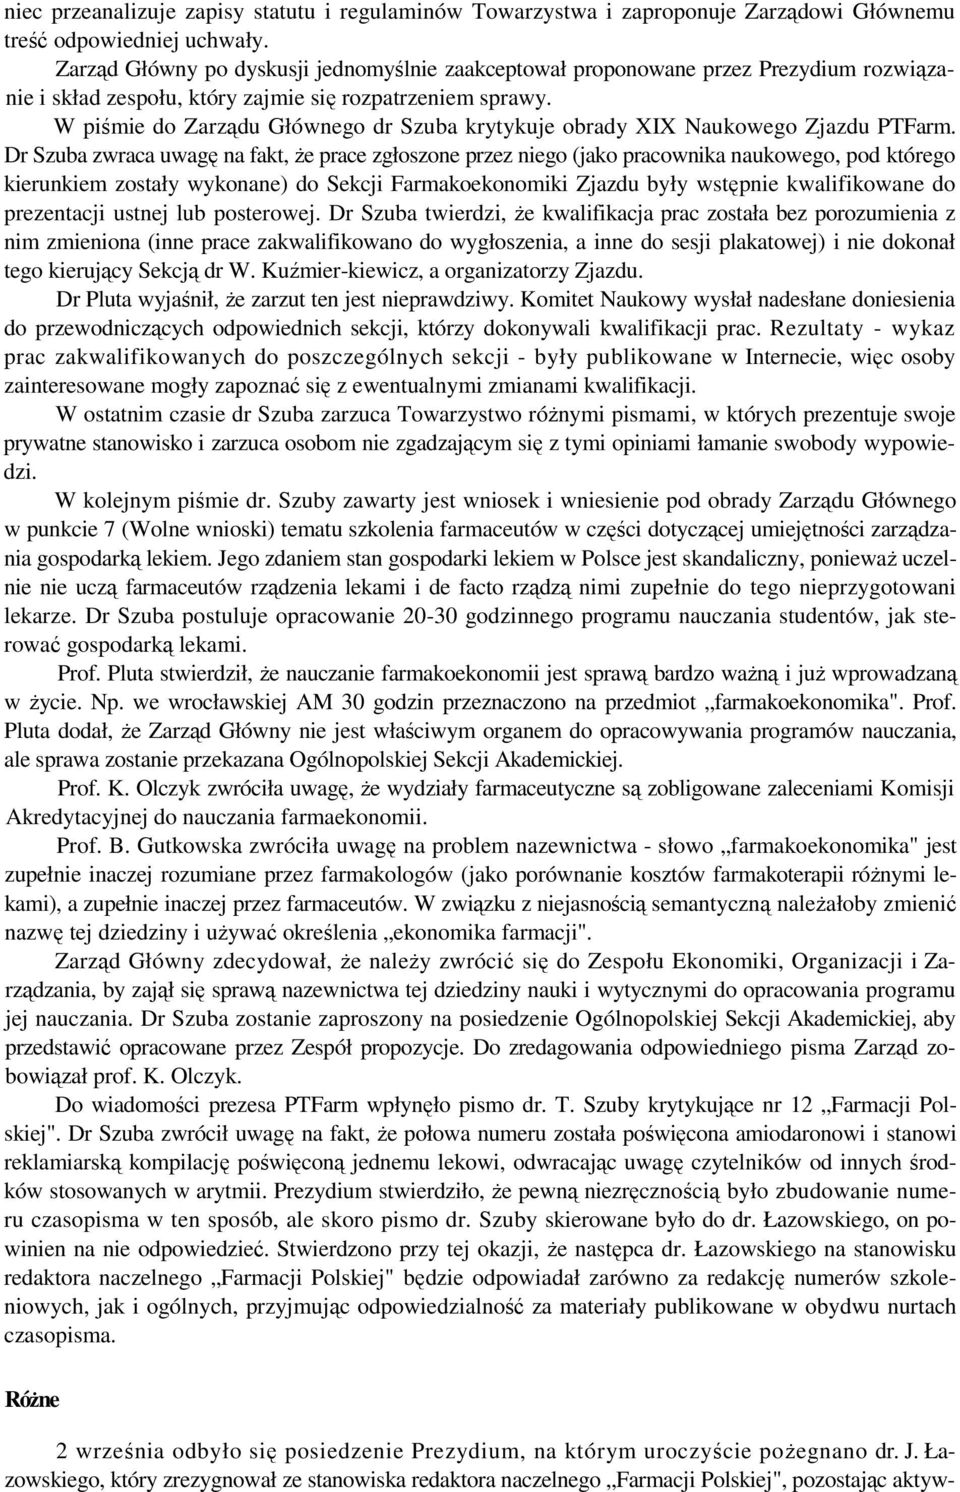 W piśmie do Zarządu Głównego dr Szuba krytykuje obrady XIX Naukowego Zjazdu PTFarm.